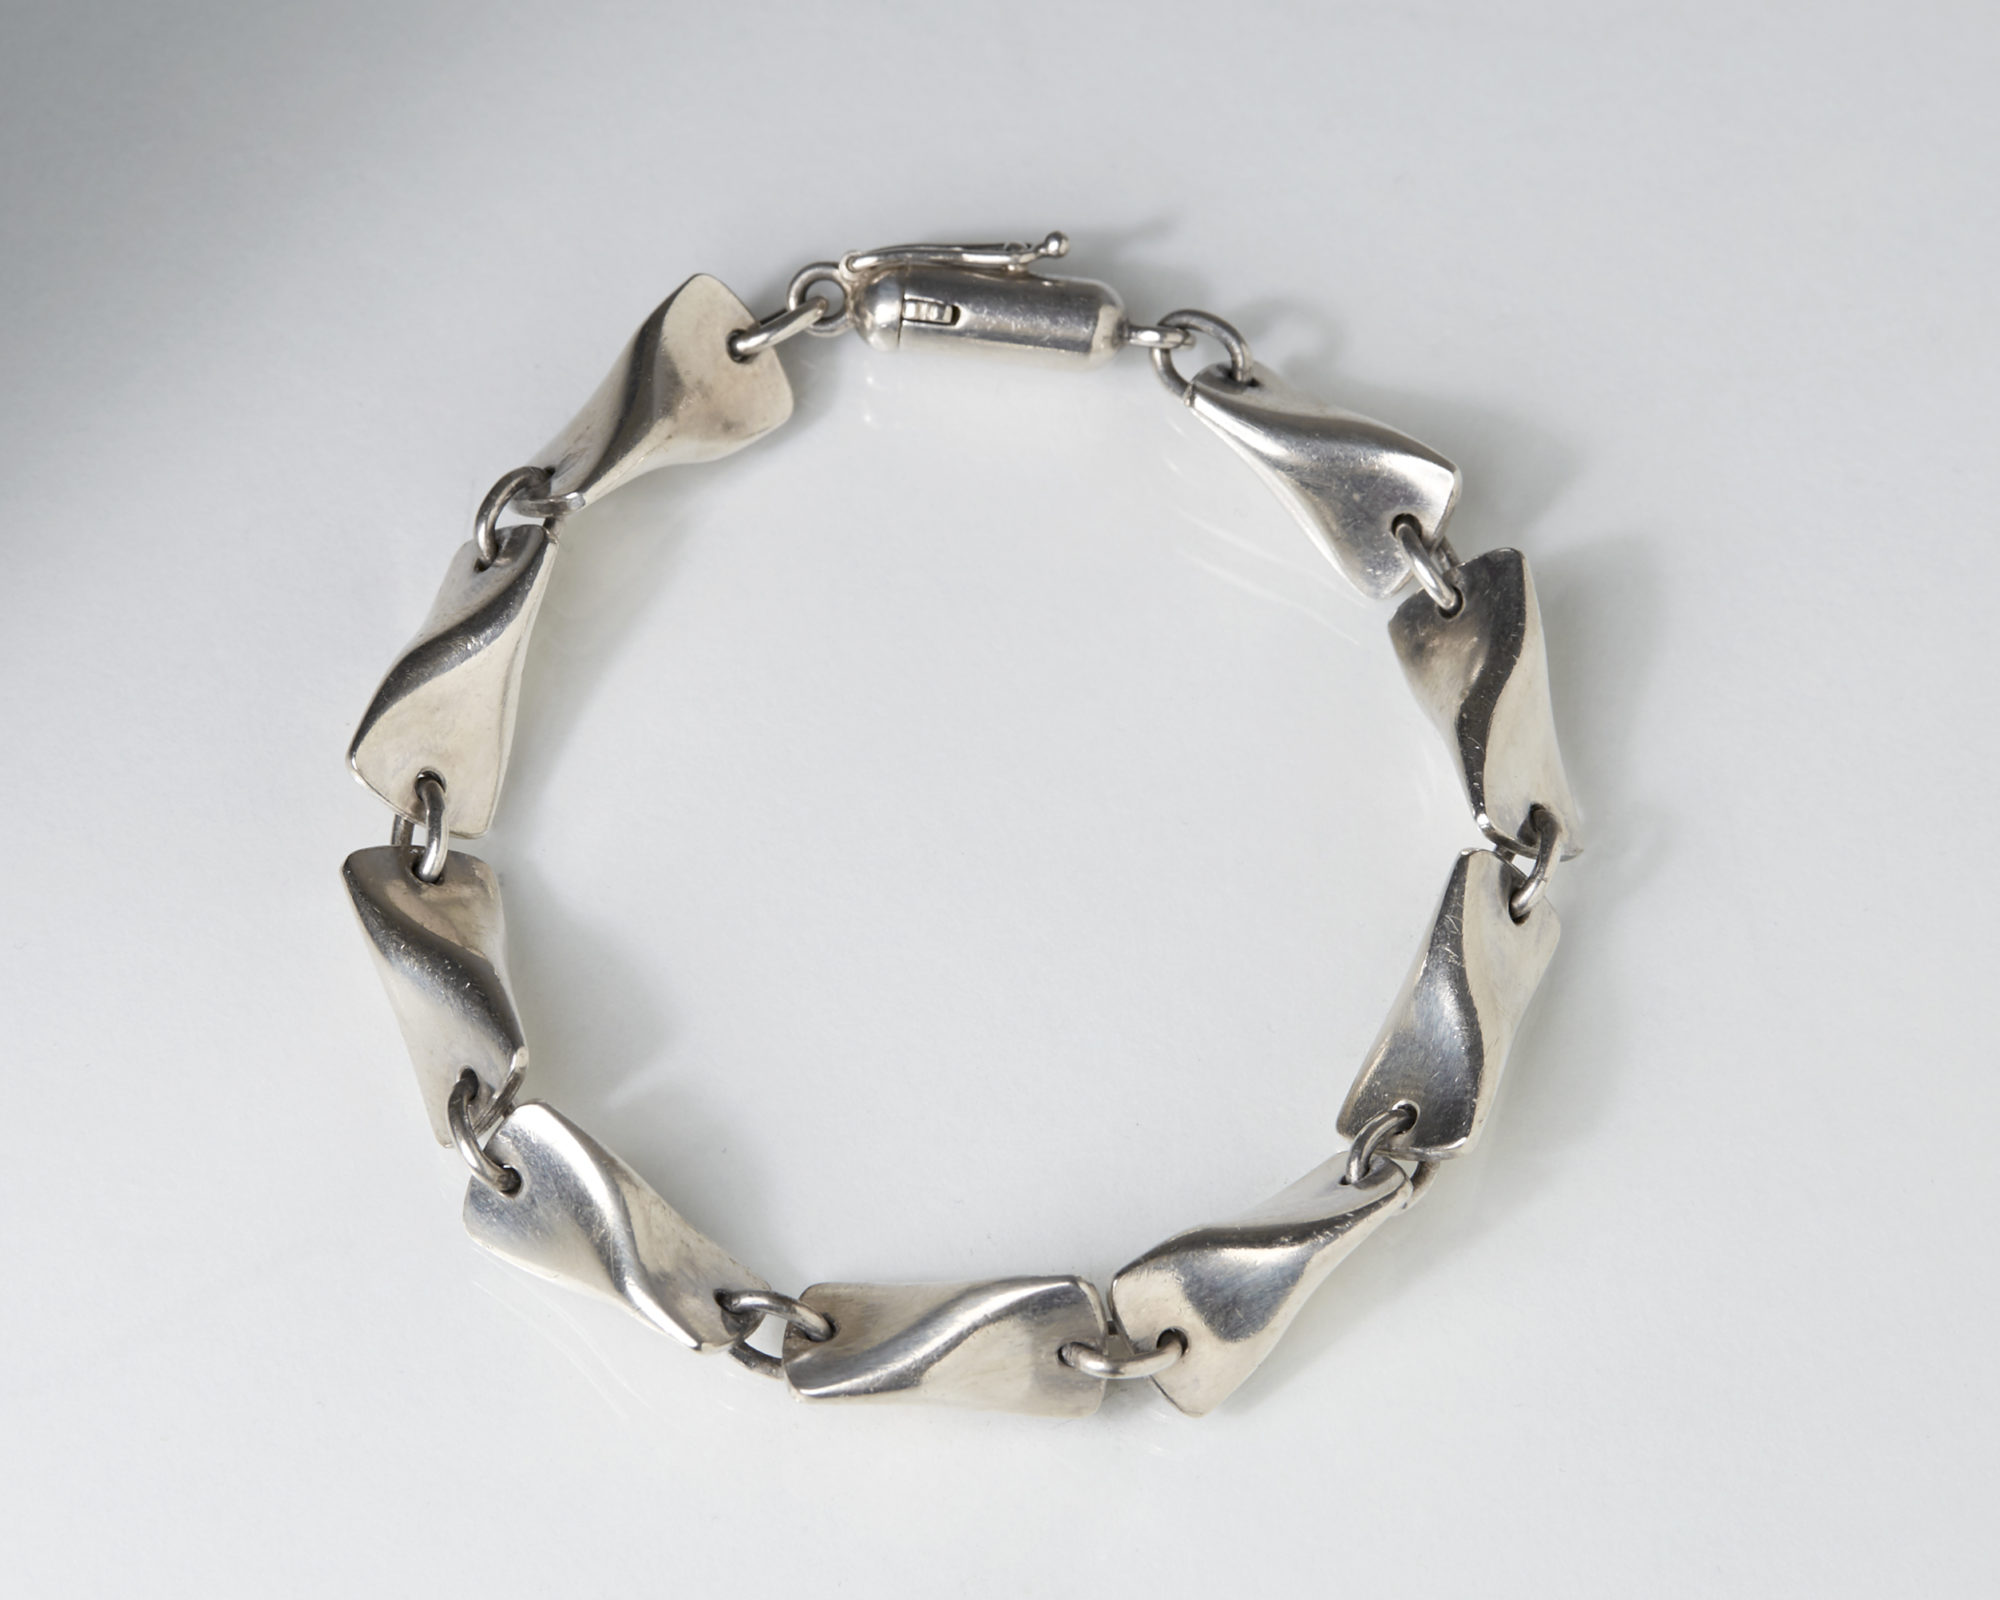 Bracelet designed by Edvard Kindt Larsen for Georg Jensen, — Modernity